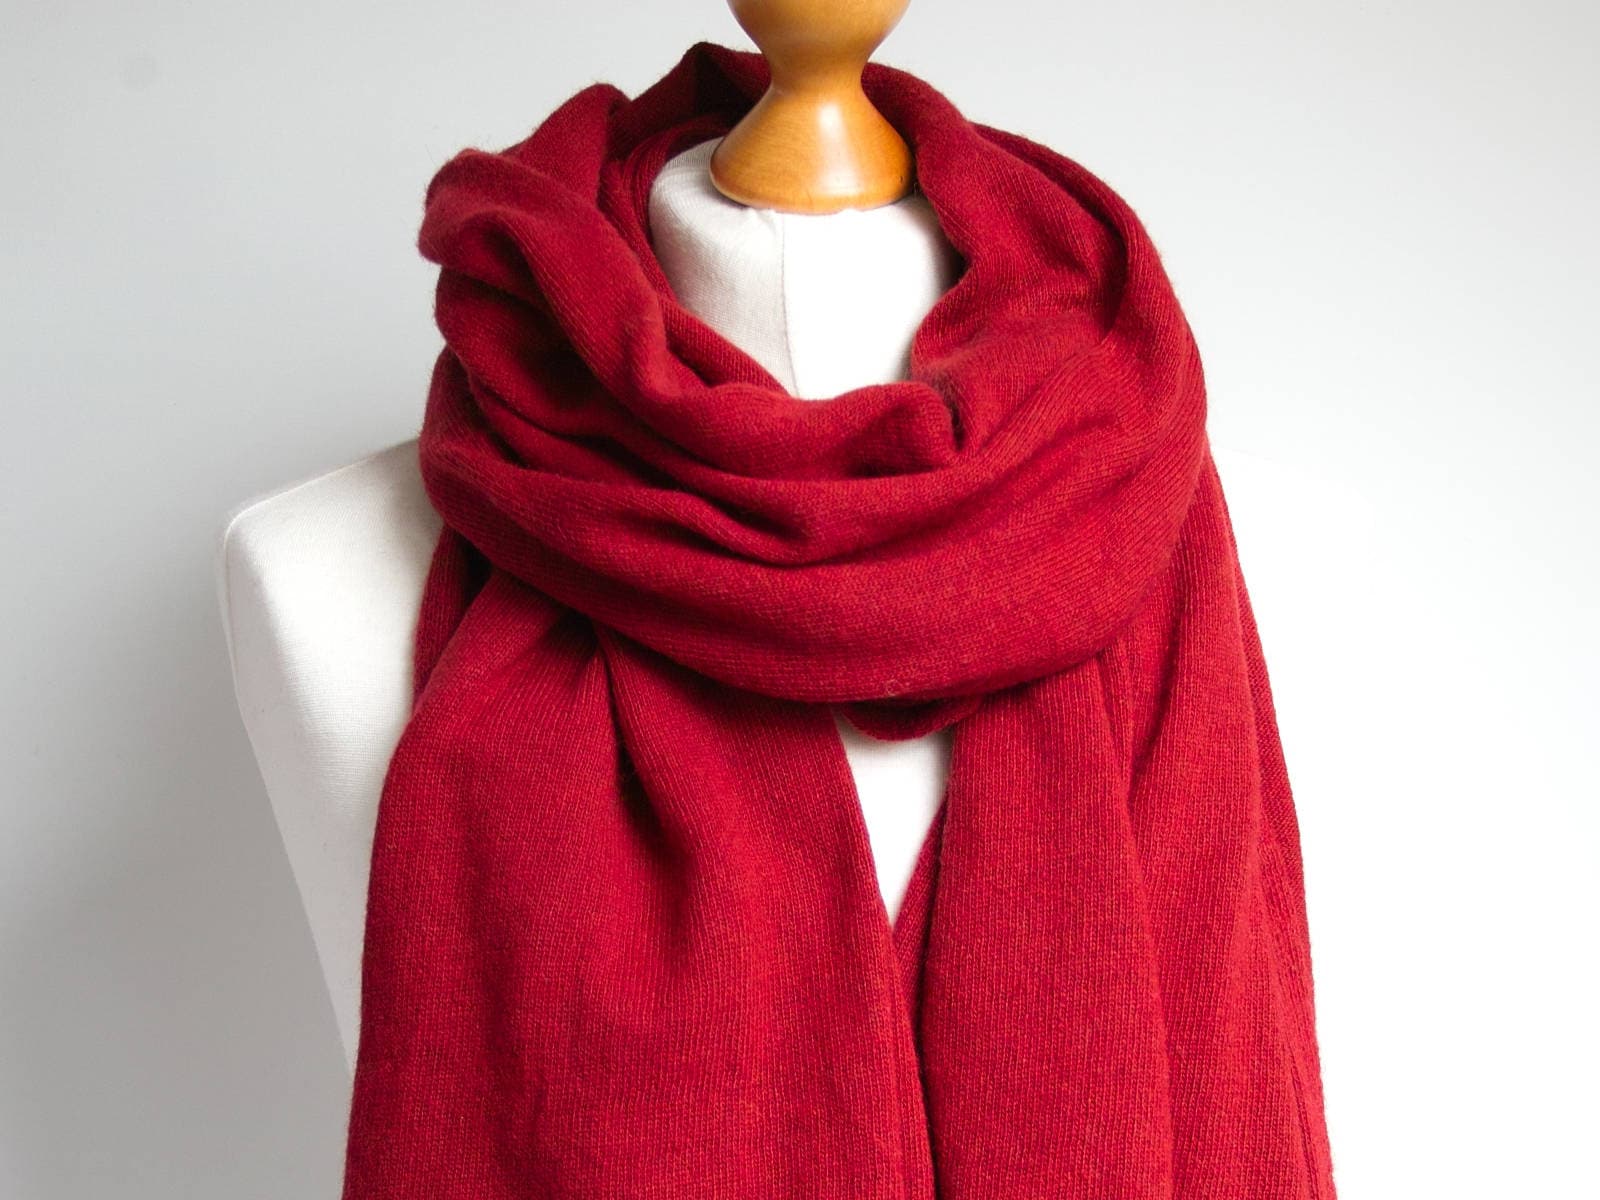 Wool scarf, deep red scarf, WINTER fashion, gift ideas, winter fashion ...